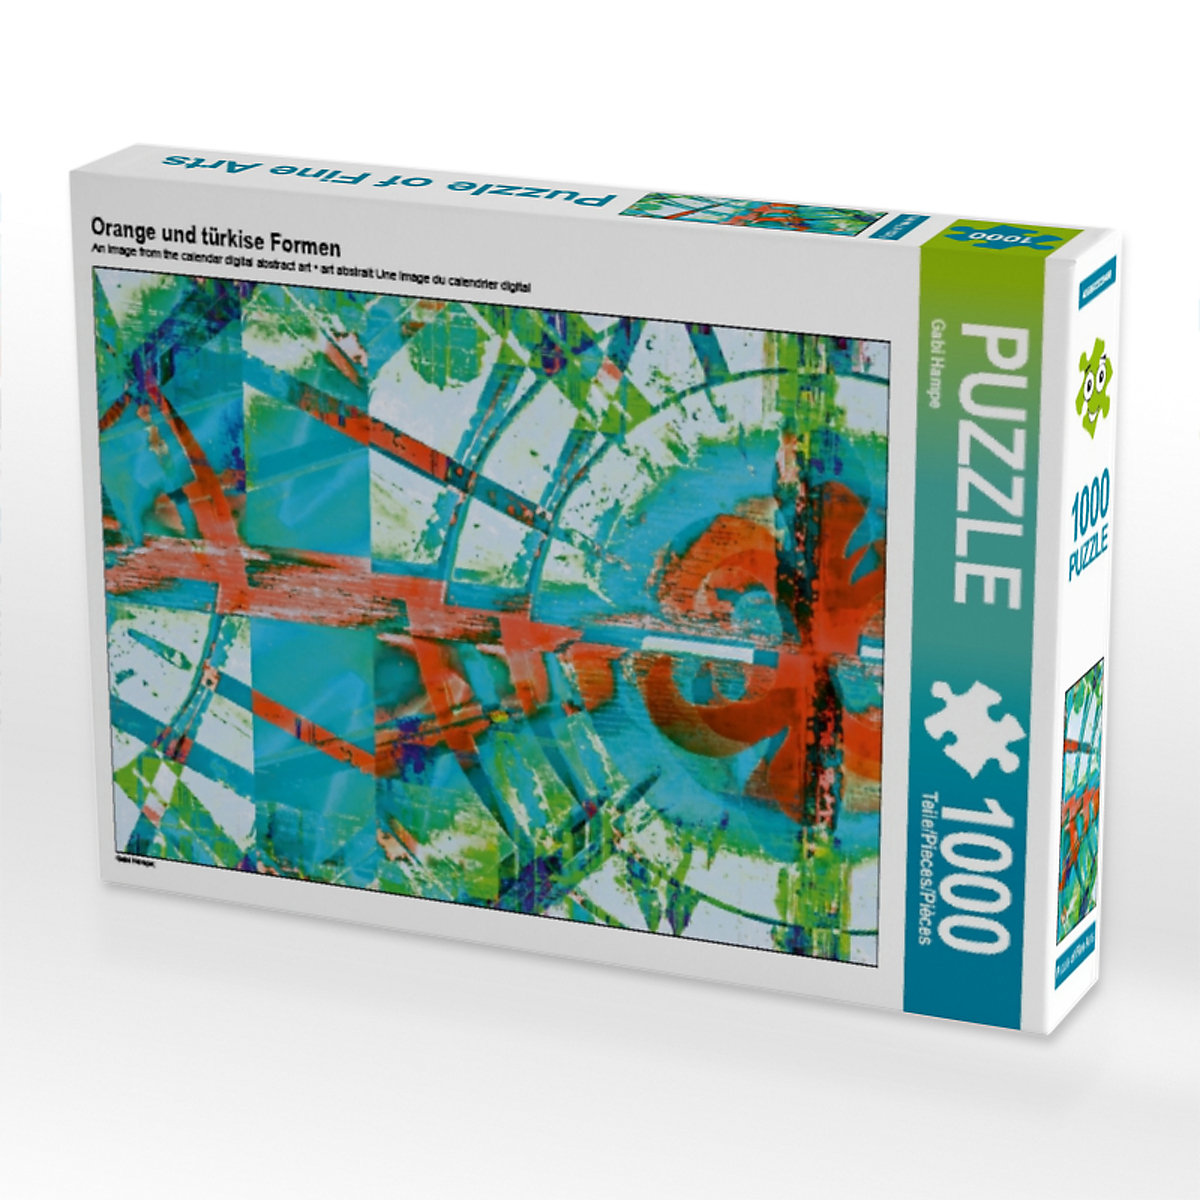 CALVENDO® Puzzle CALVENDO Puzzle Orange und türkise Formen 1000 Teile Foto-Puzzle für glückliche Stunden